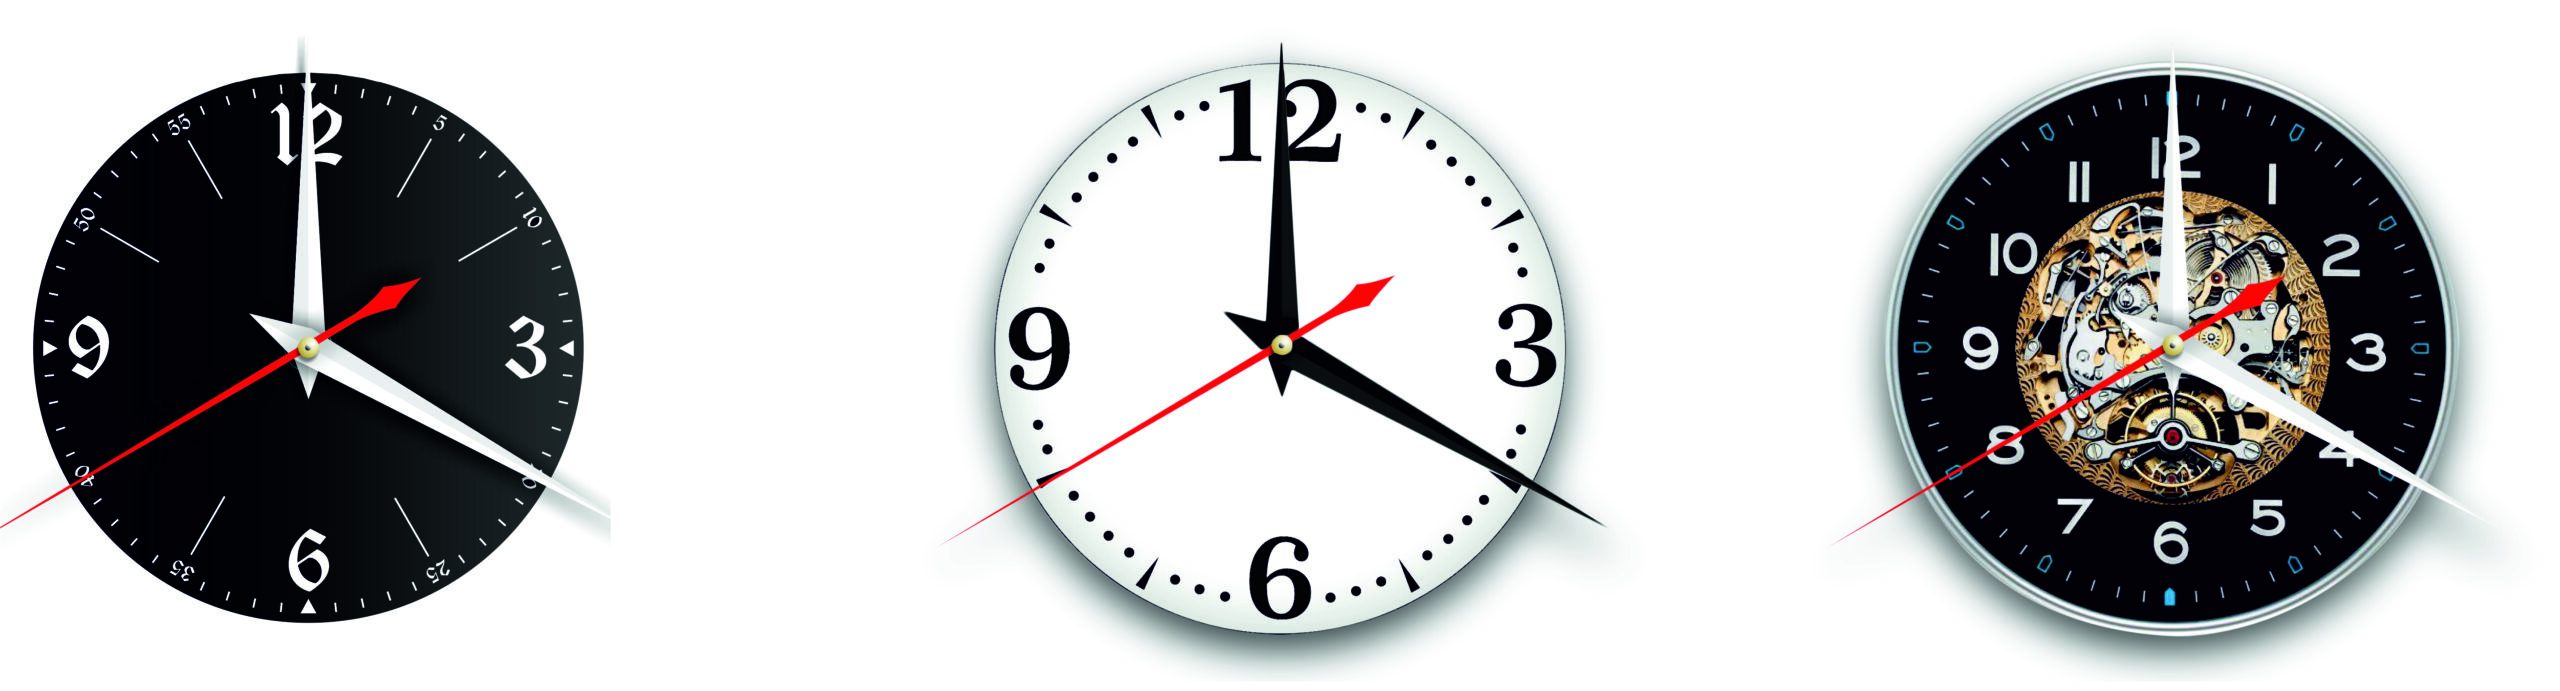 Константин Ступин [Версия 1]. Дизайнерские часы из настоящей виниловой пластинки